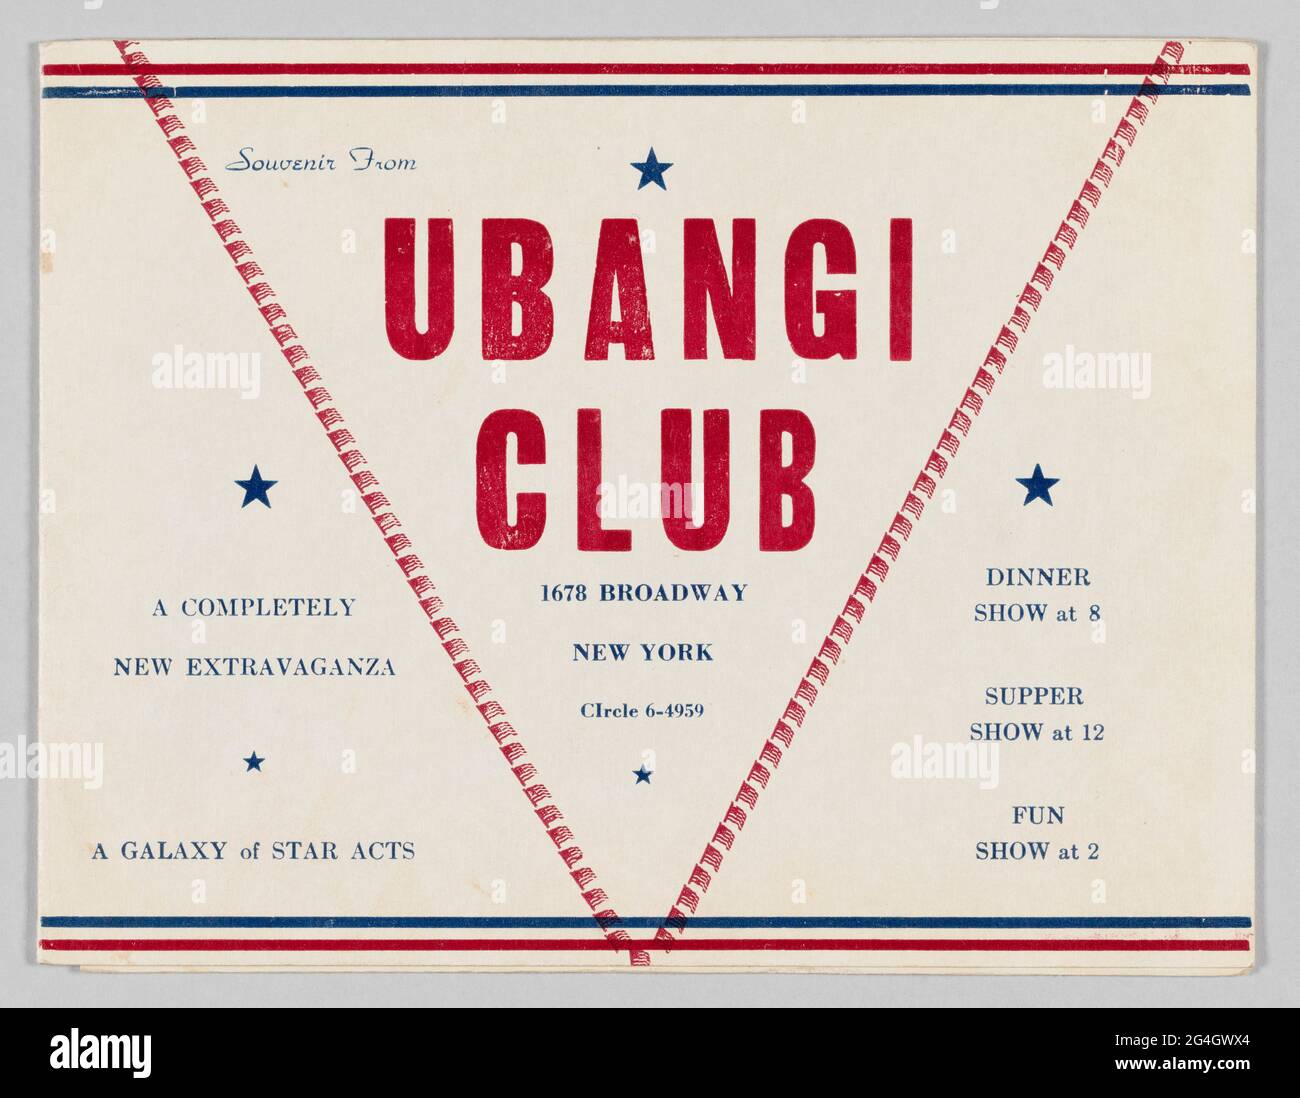 Ein Fotoordner vom Ubangi Club. Die Mappe enthält eine sepiafarbene  Fotografie (2013.46.25.66.1). Die Vorderseite des Ordners ist mit rotem und  blauem Text und Design gestaltet. Über die obere und untere Seite der